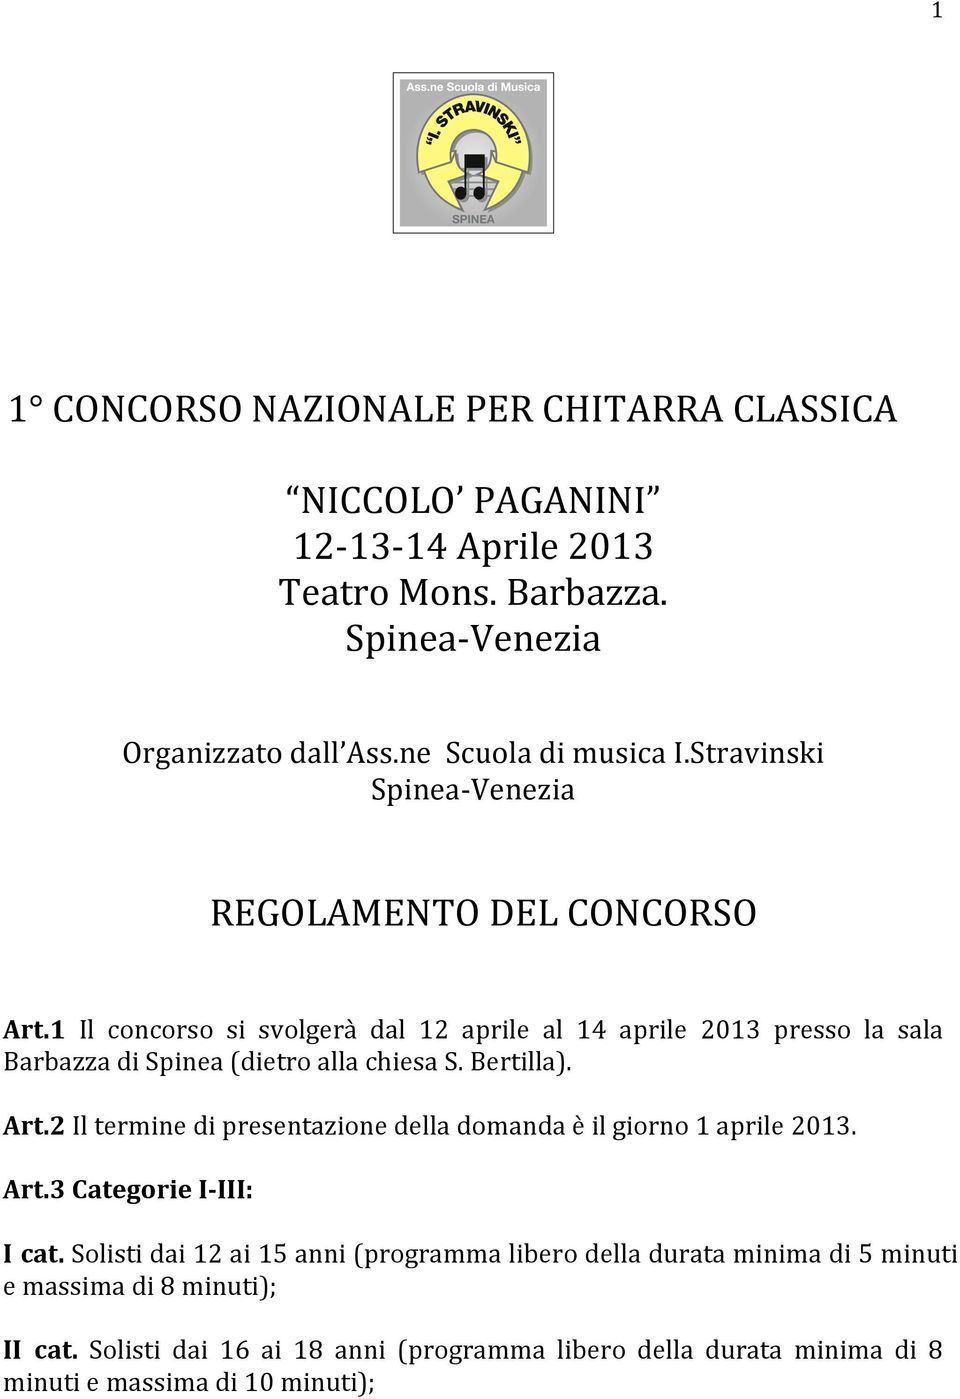 1 Il concorso si svolgerà dal 12 aprile al 14 aprile 2013 presso la sala Barbazza di Spinea (dietro alla chiesa S. Bertilla). Art.